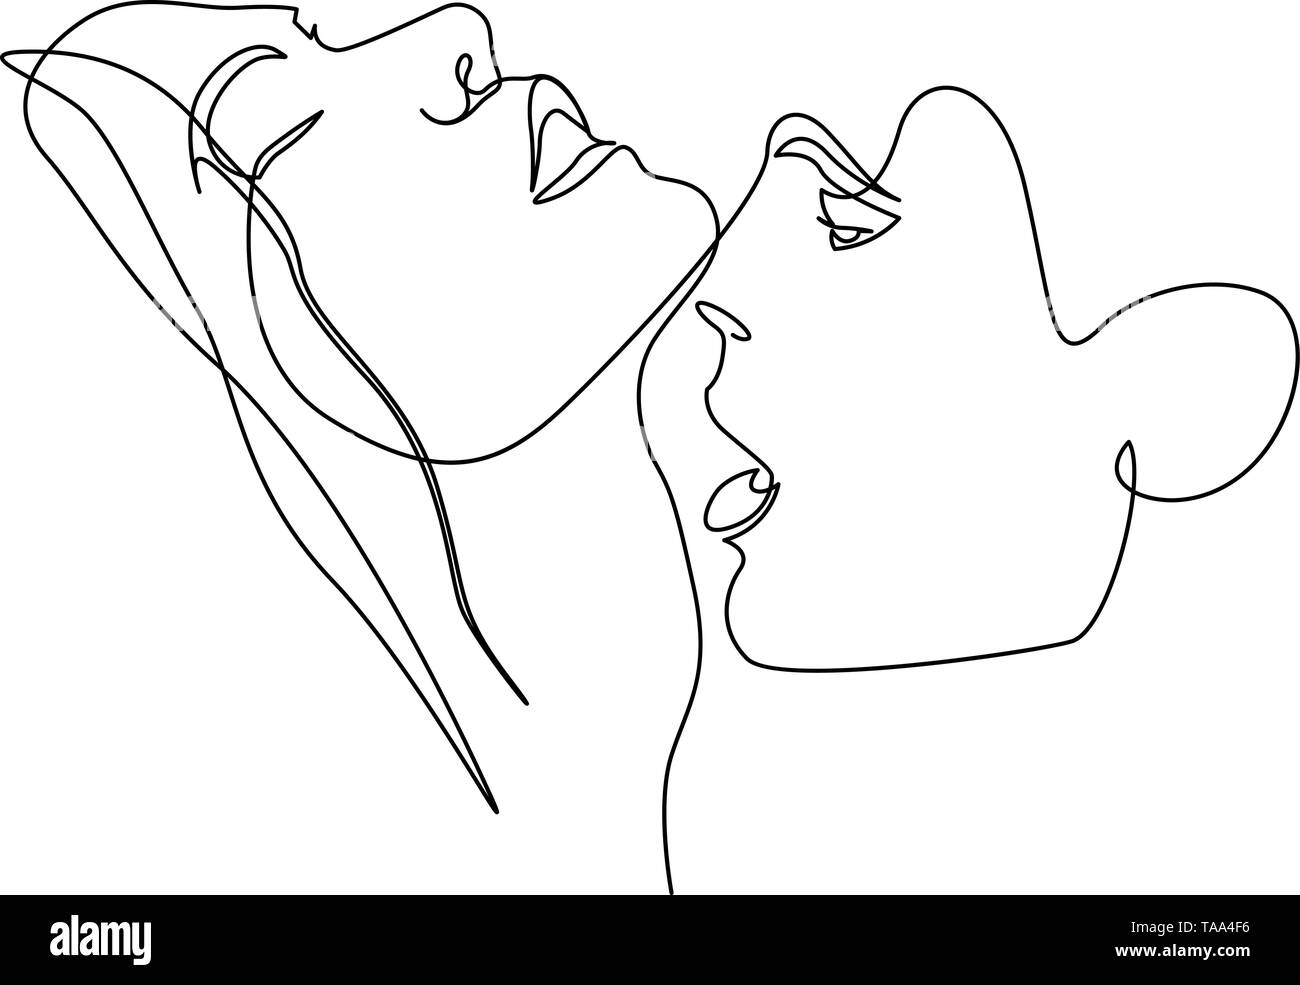 Continua linea di una bella donna e uomo bacia appassionatamente Illustrazione Vettoriale